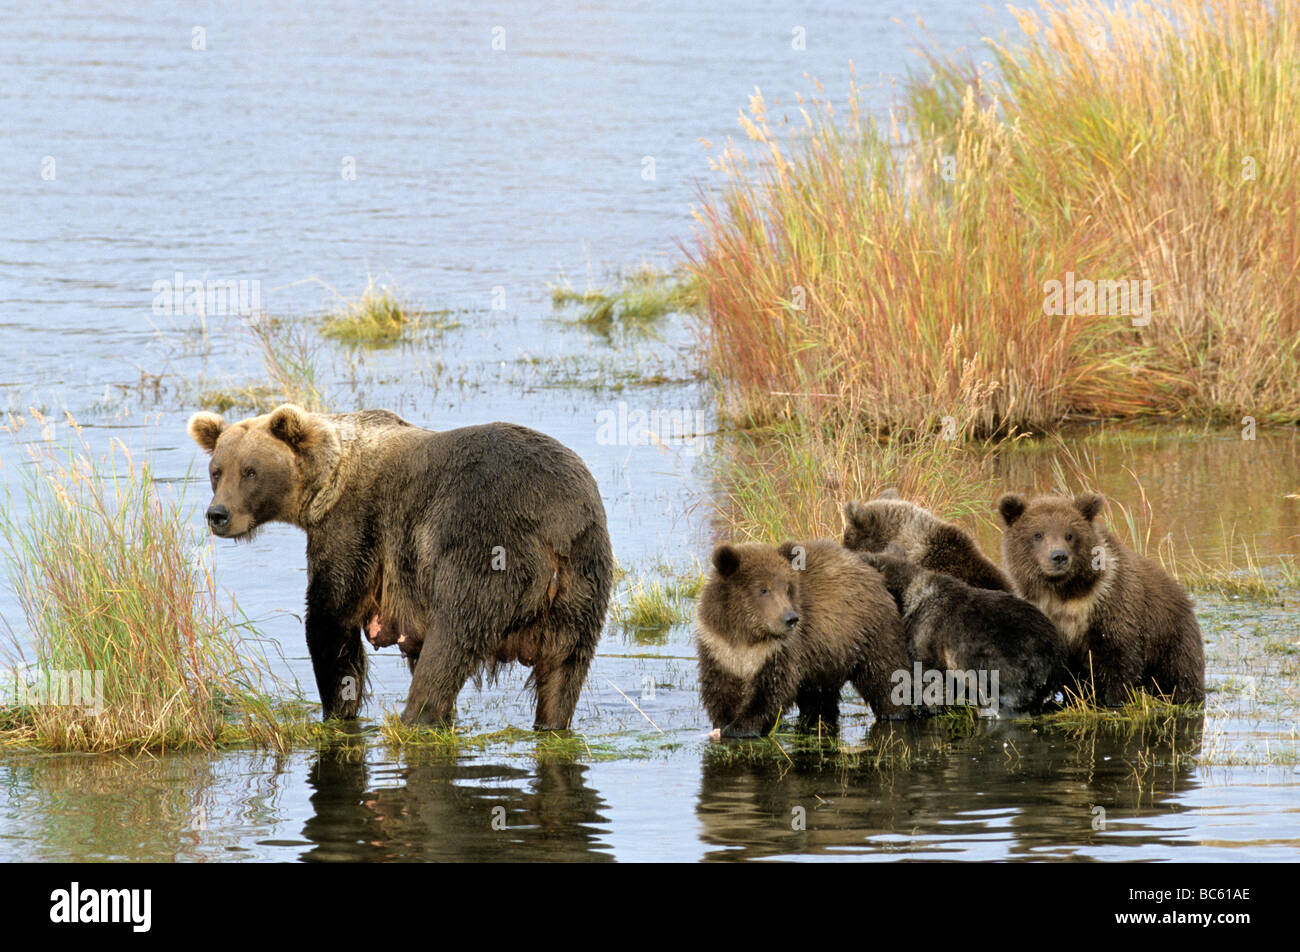 Ours brun (Ursus arctos) debout avec ses oursons en rivière, Brooks River, Katmai National Park, Alaska, USA Banque D'Images